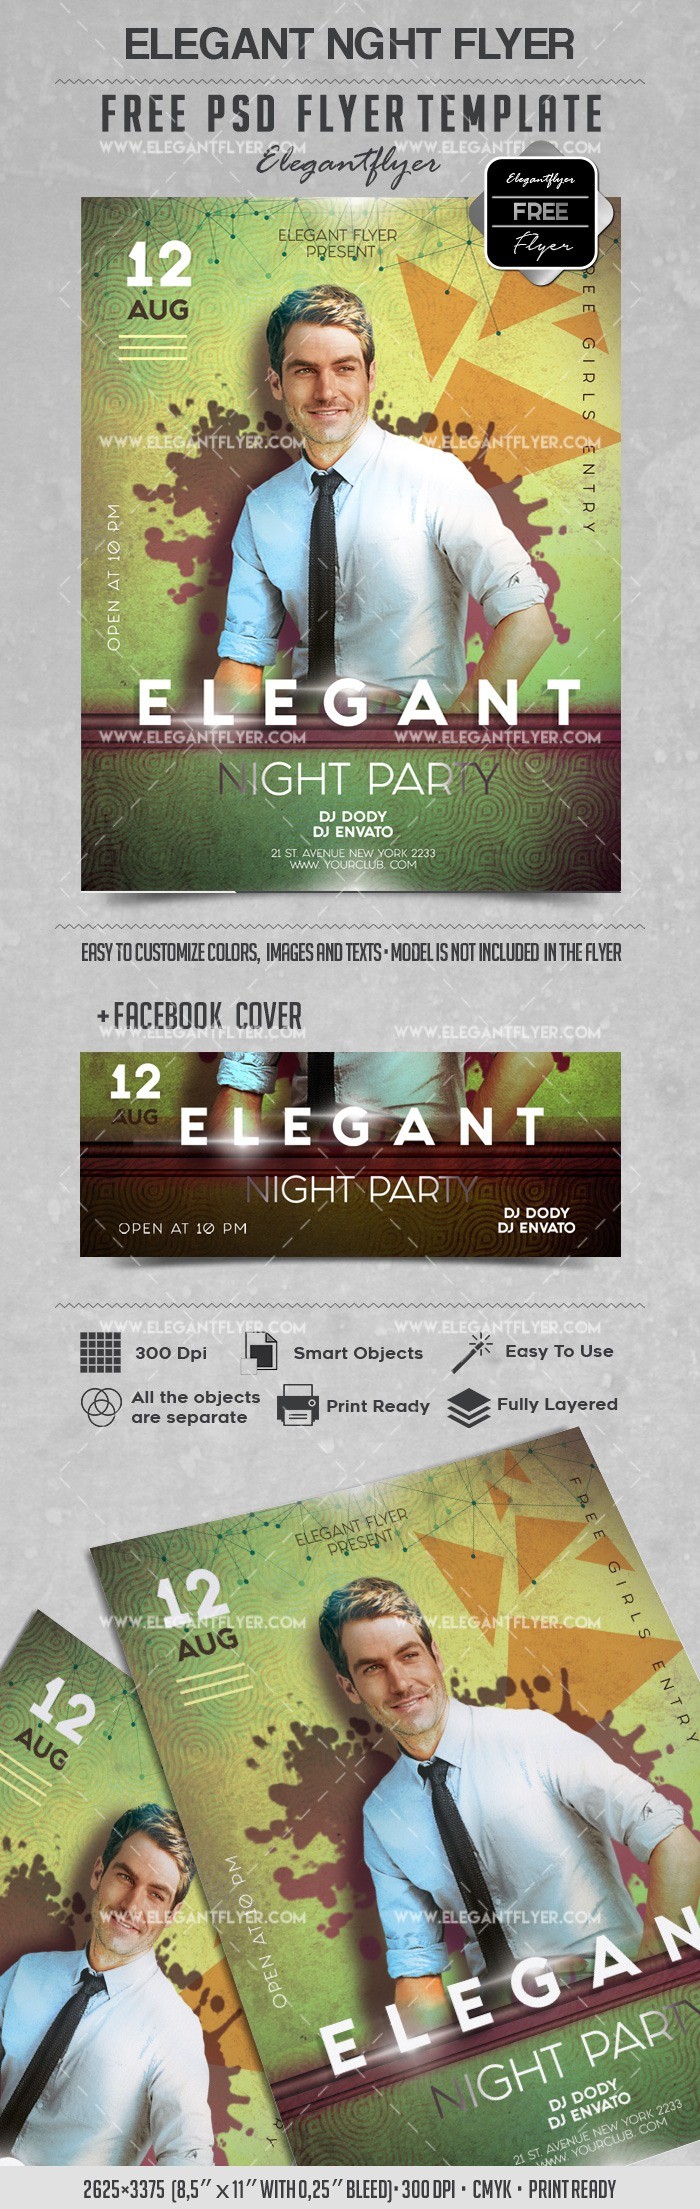 Elegant Night Party by ElegantFlyer